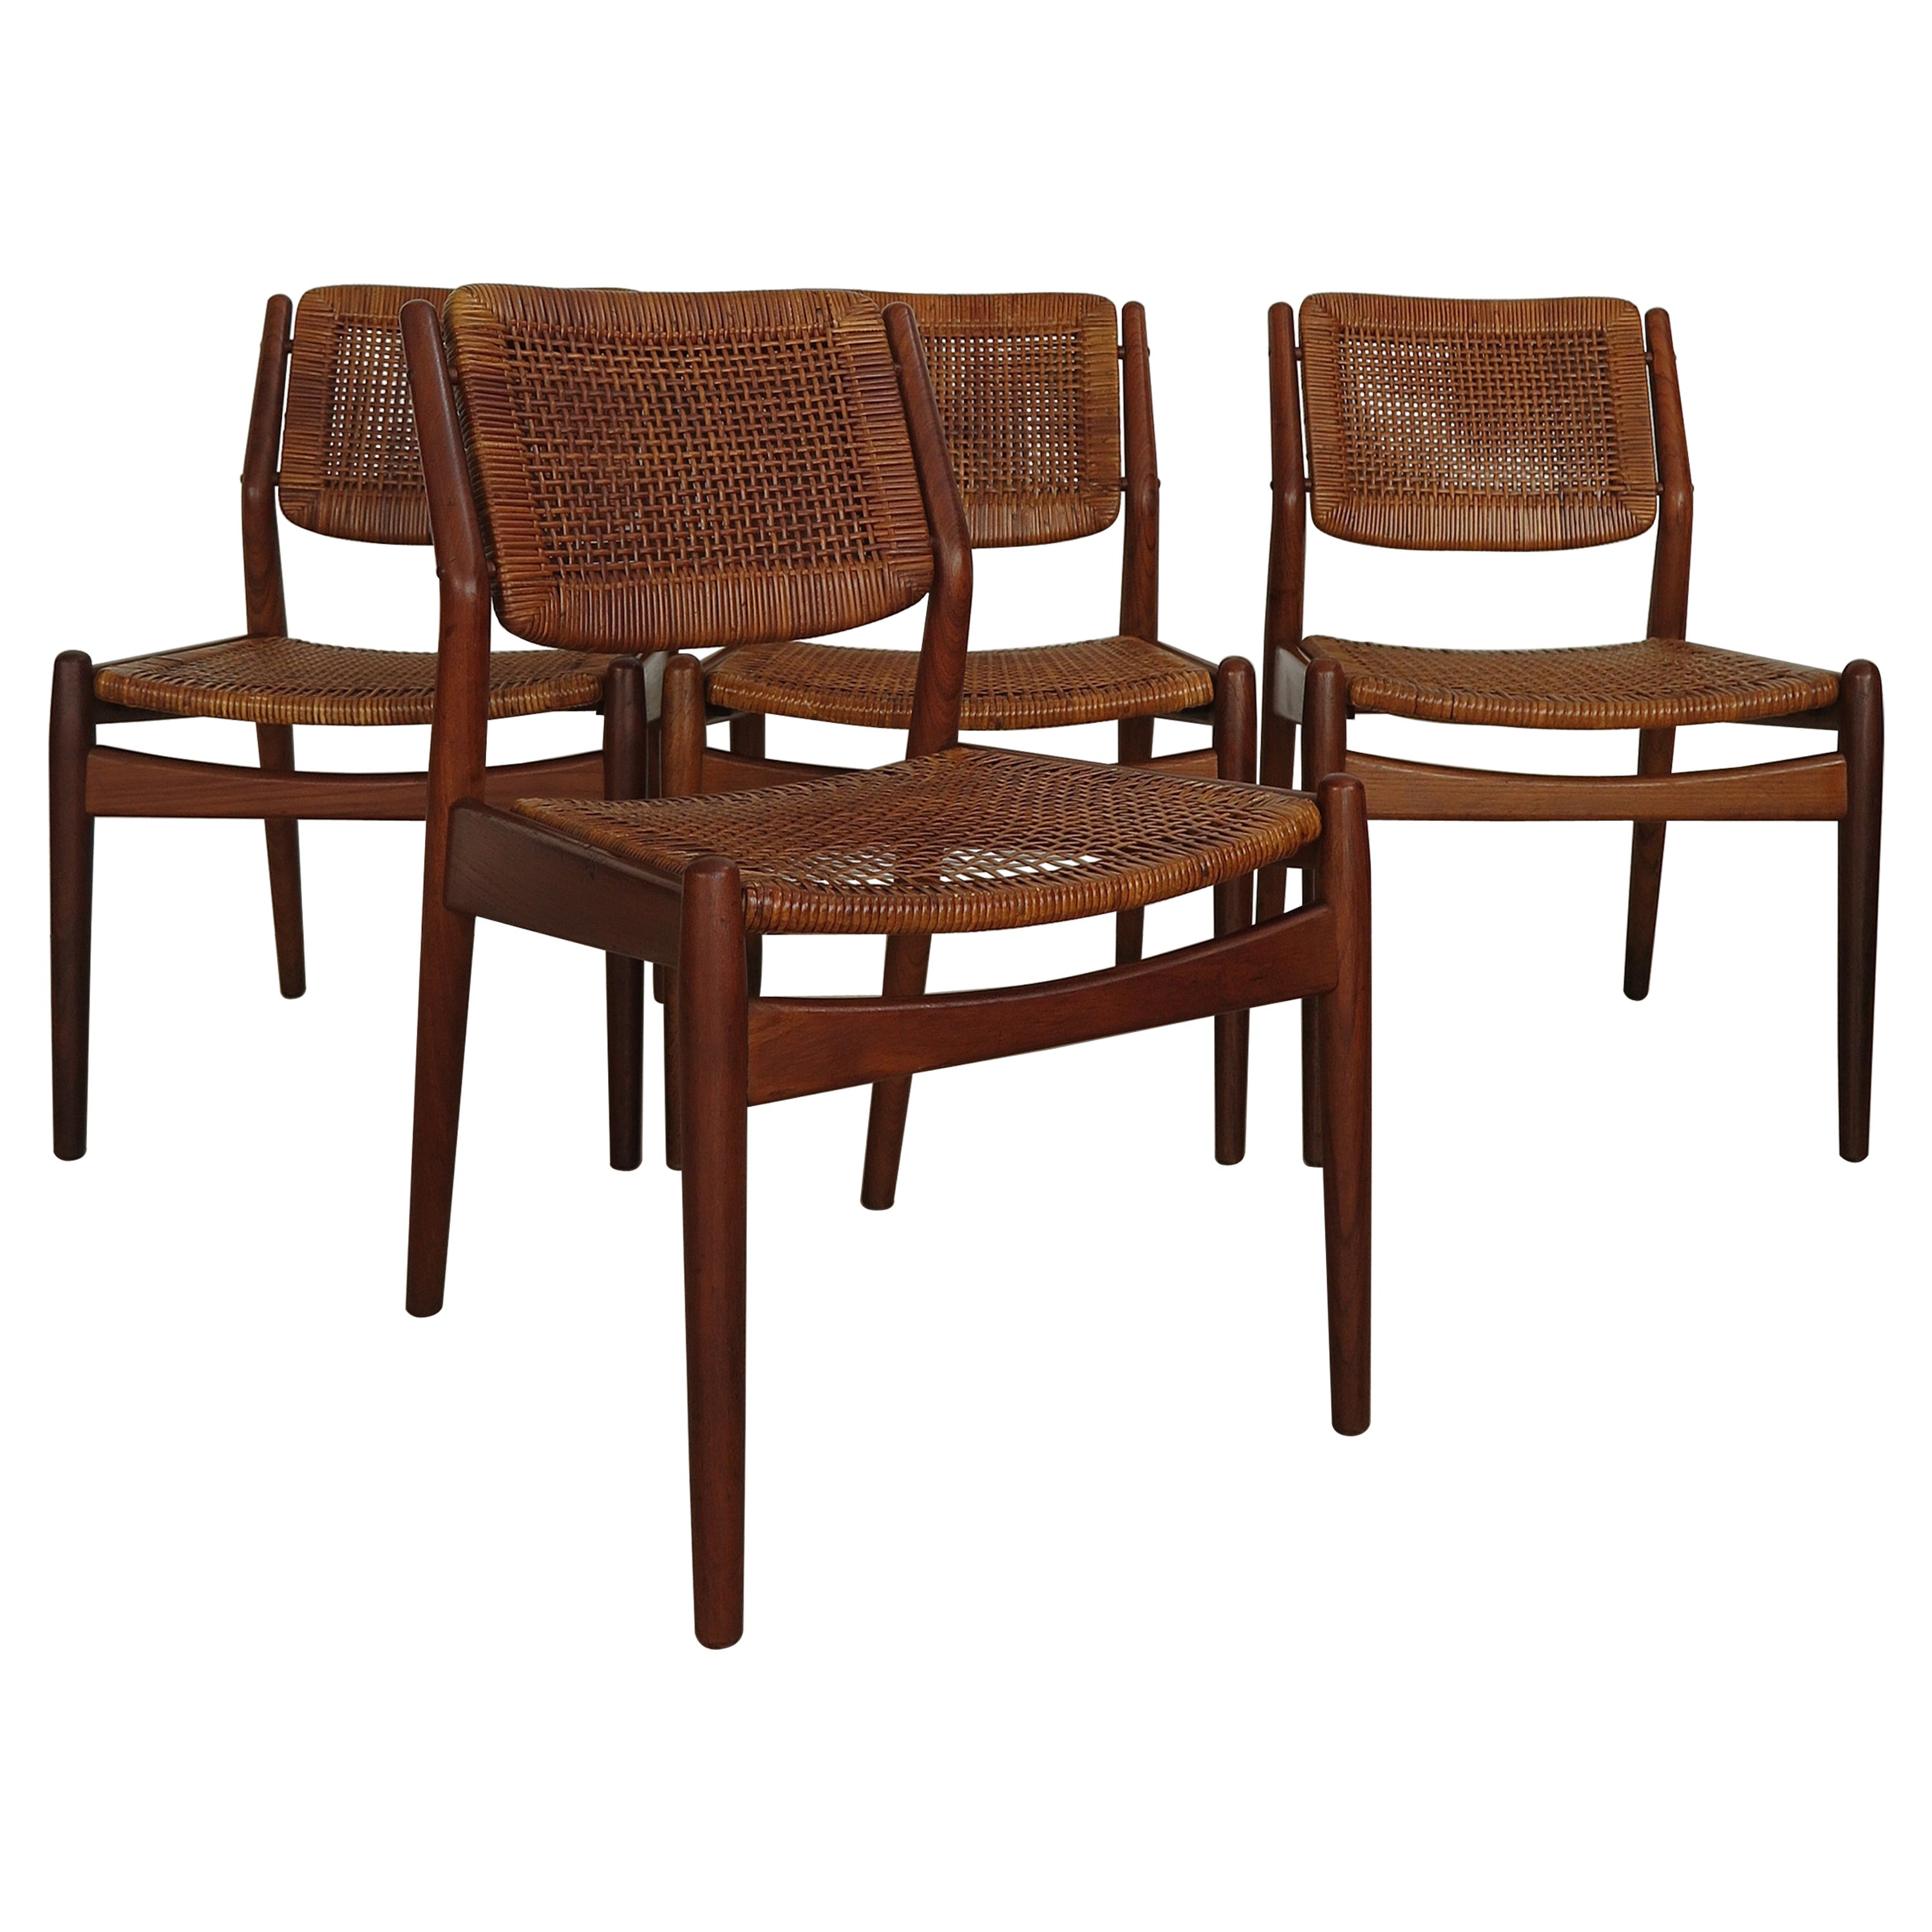 Arne Vodder Midcentury Scandinavian Teak Rattan Chairs for Sibast 1950s For Sale